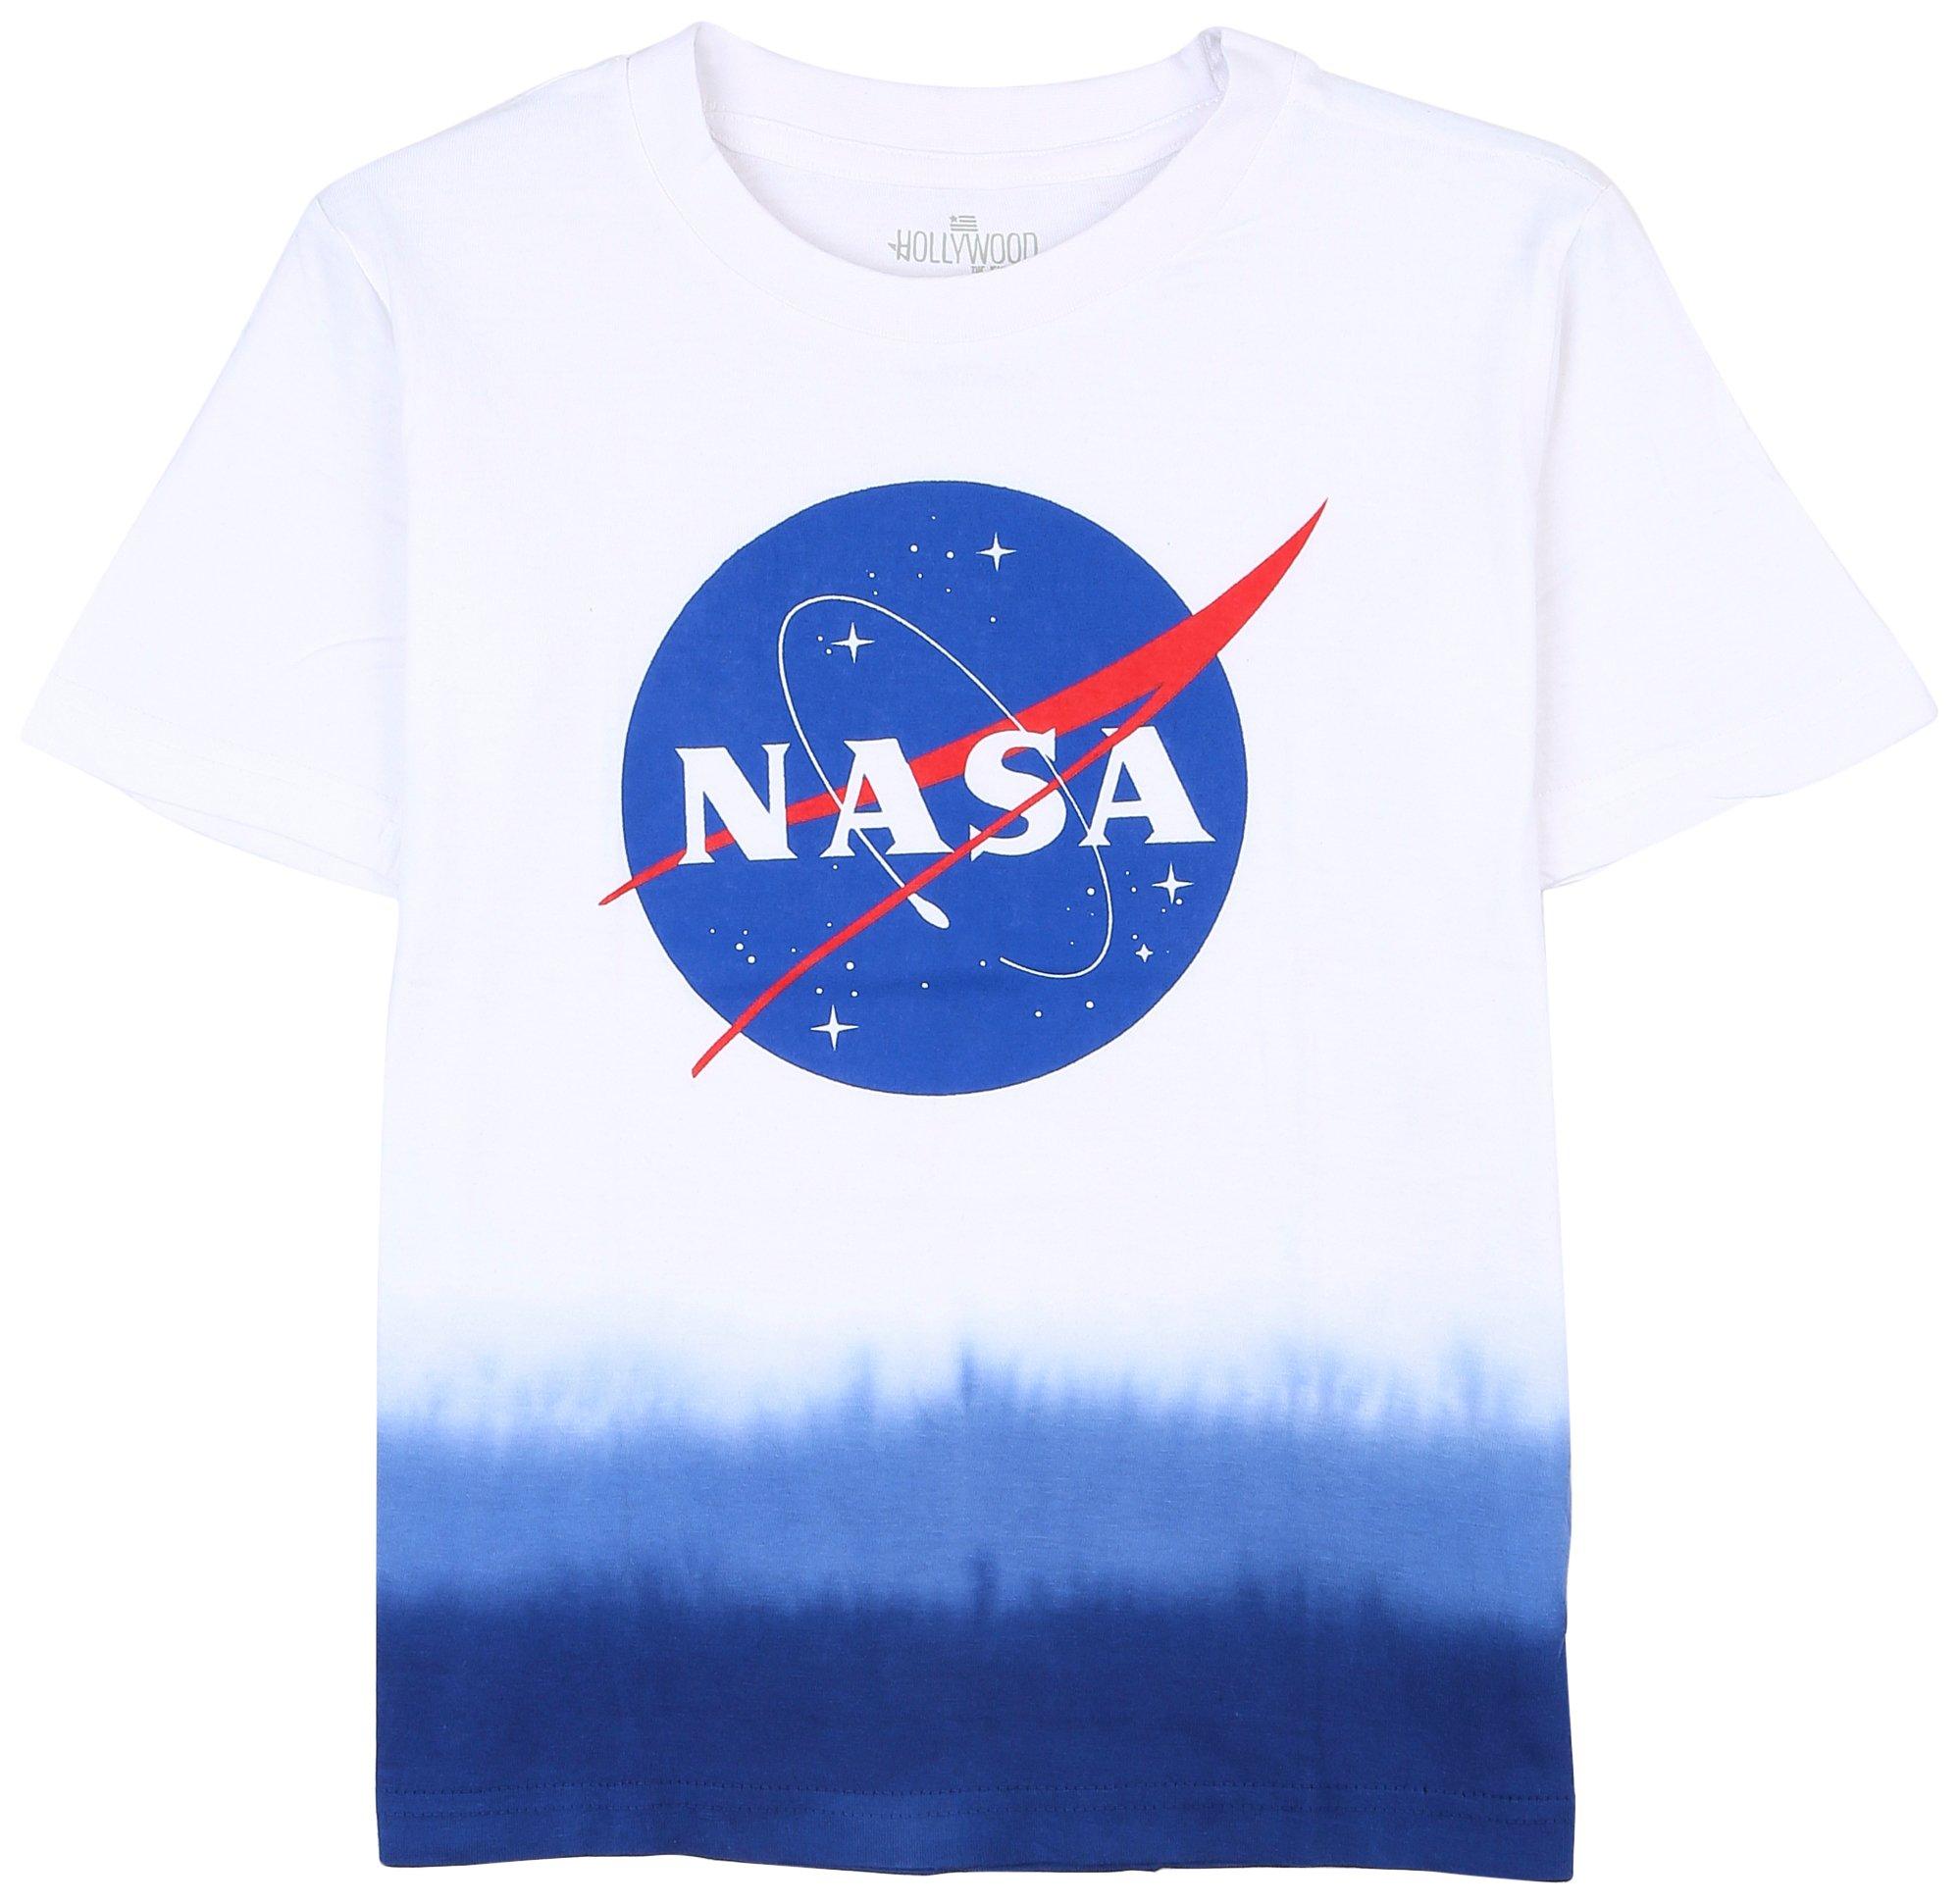 Little Boys NASA T-Shirt